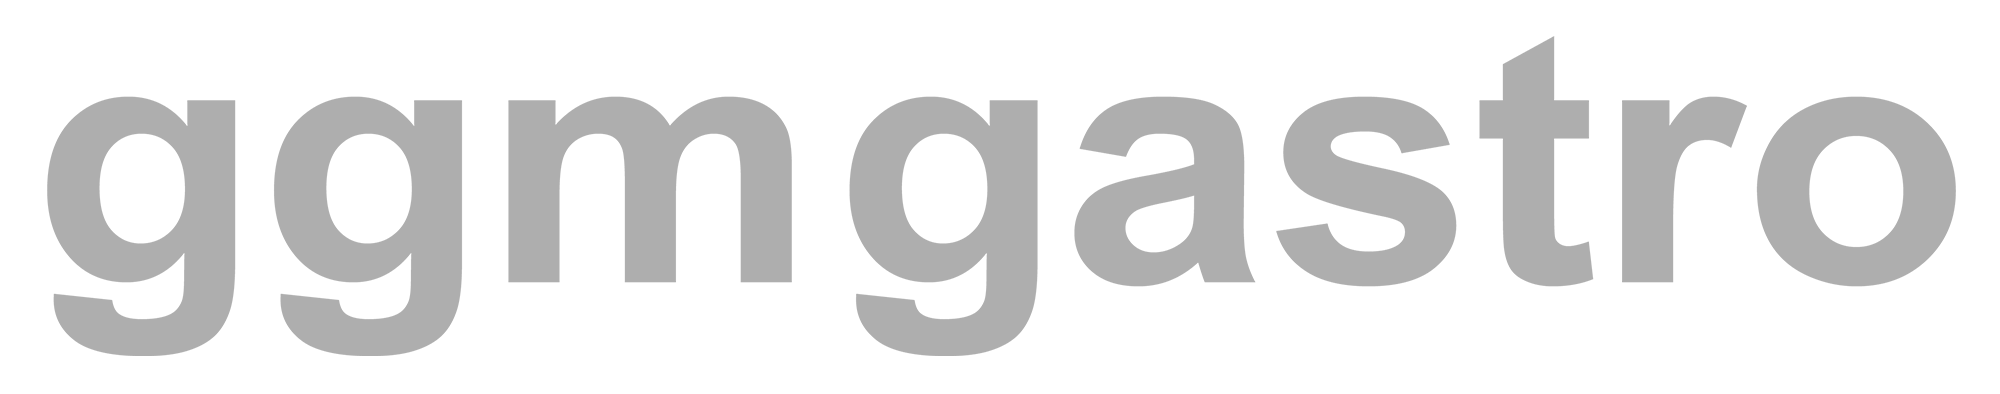 Ggmgastro-logo-rot-schwarz